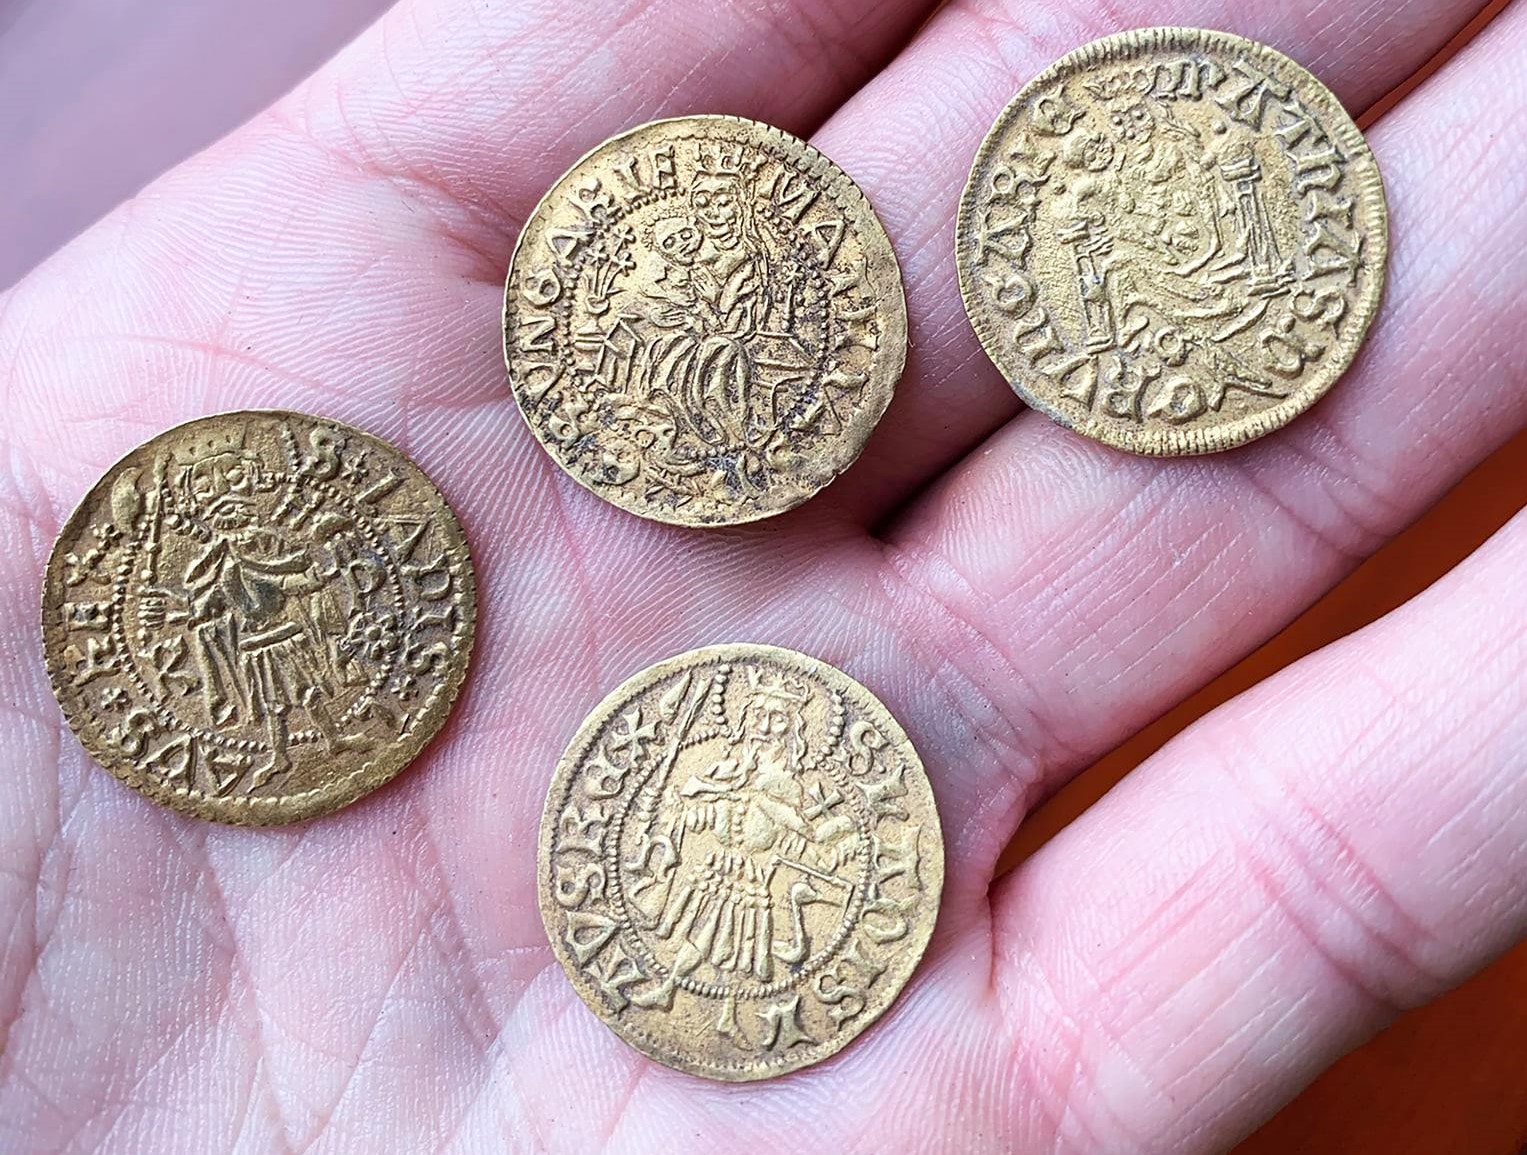 Tausende mittelalterliche Münzen in Zentralungarn ausgegraben - Fotos!